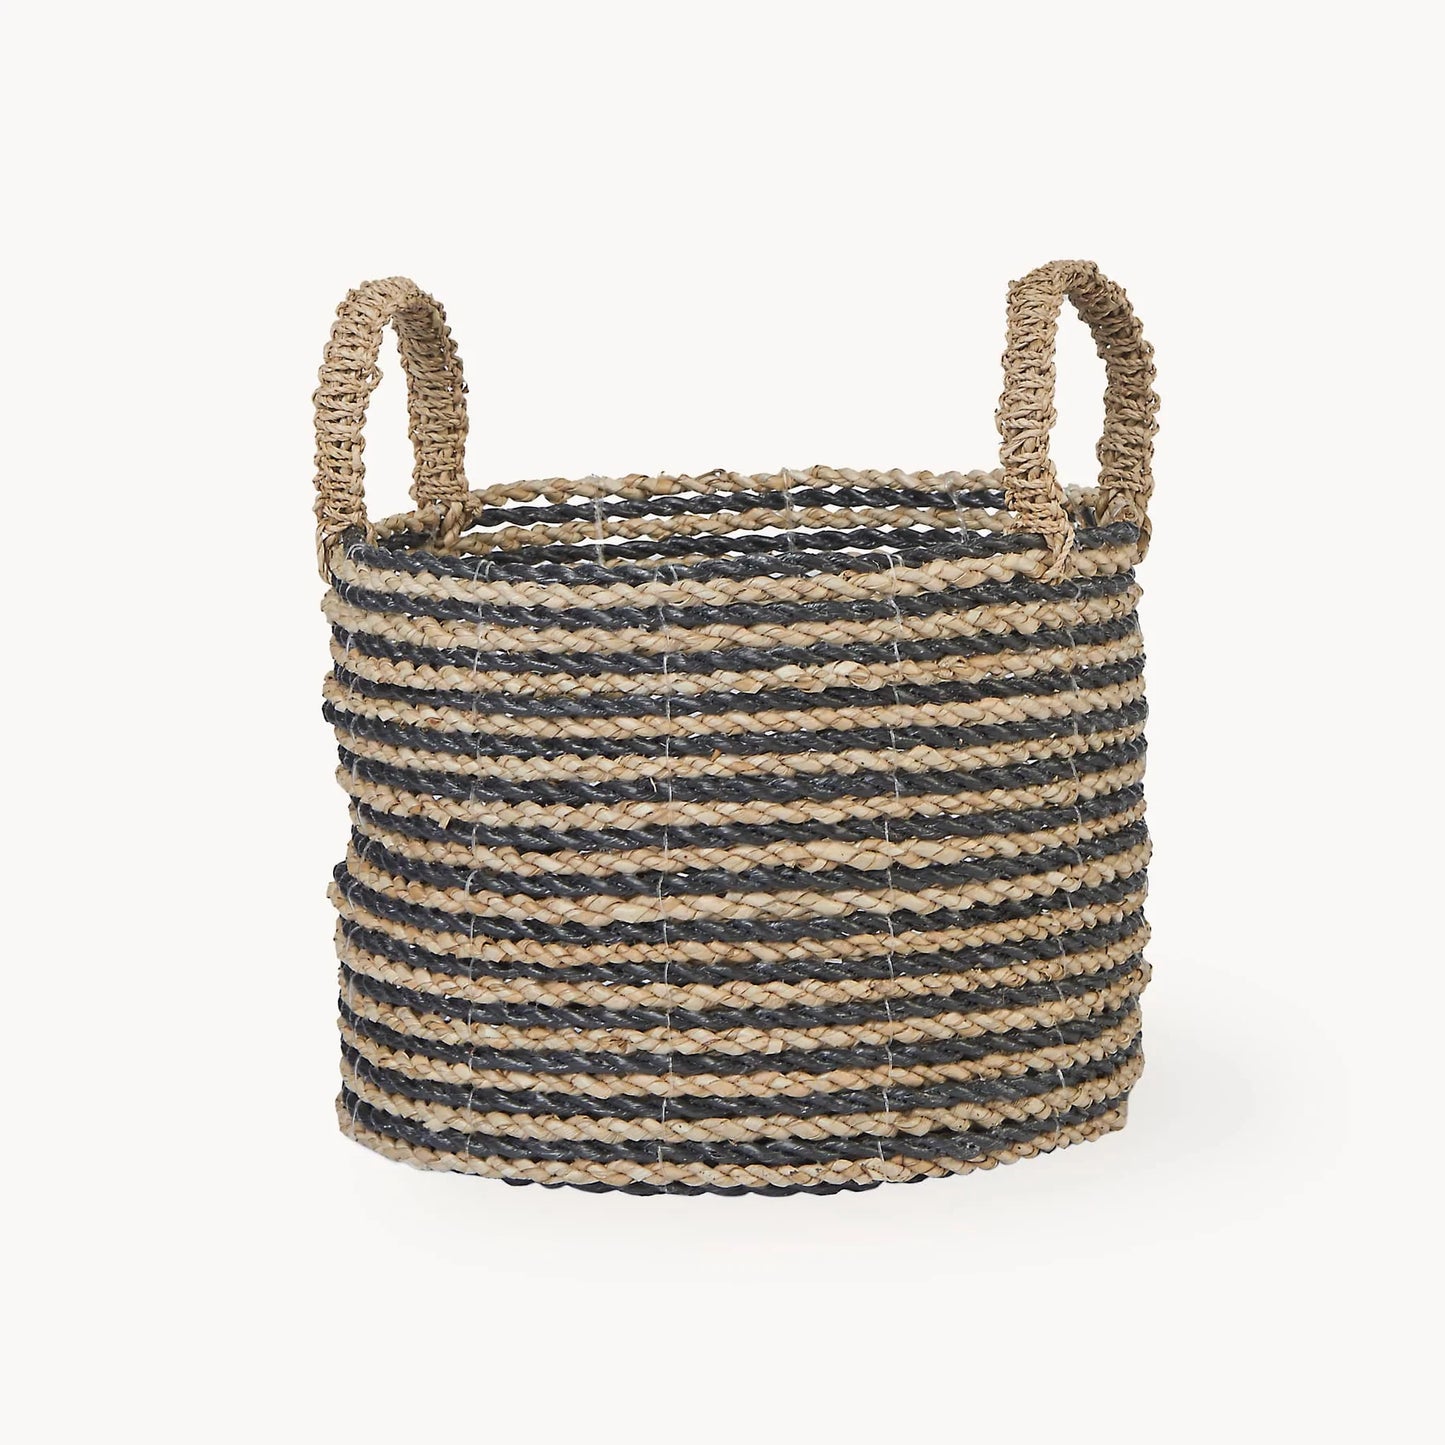 Handled Basket - 3 Sizes - Black/Natural